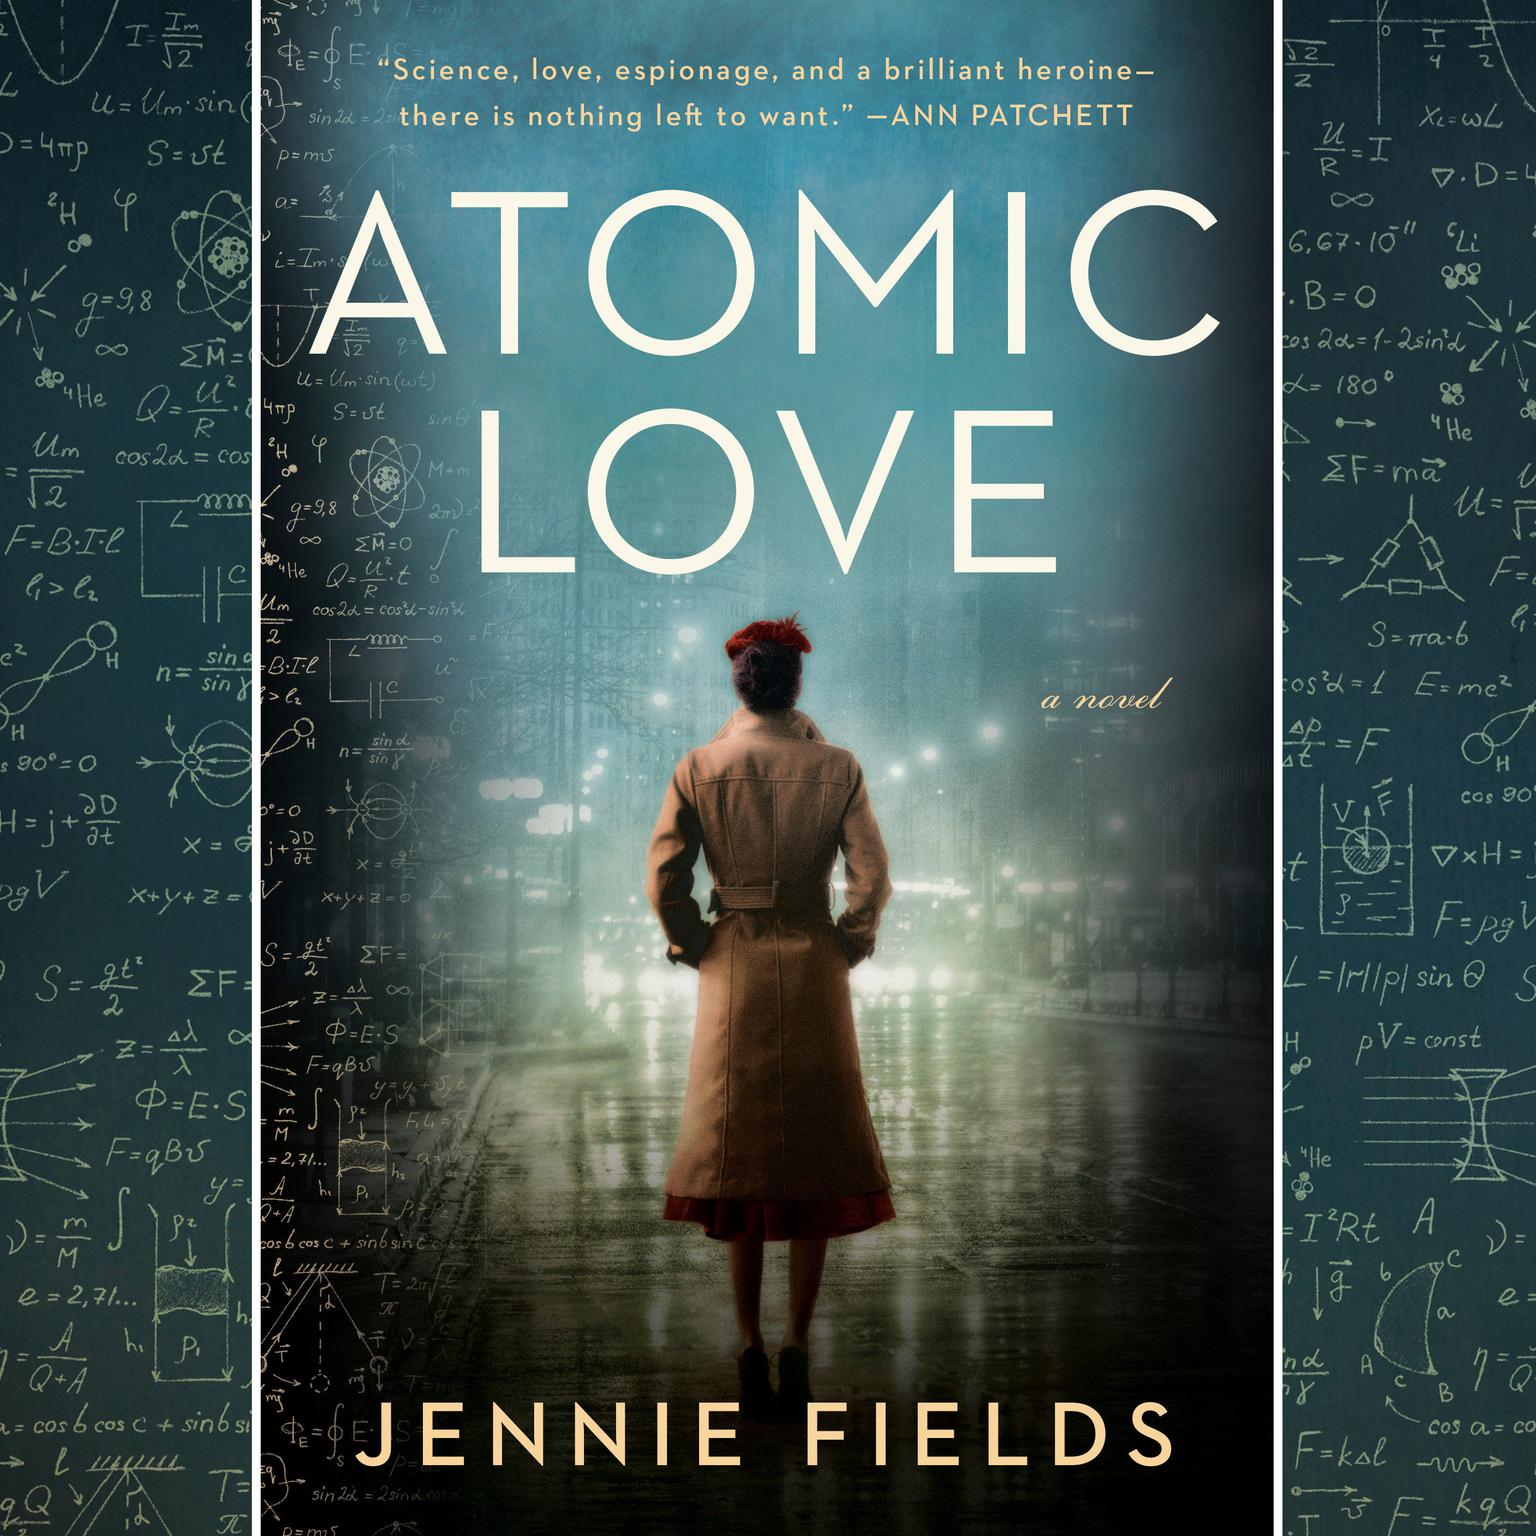 Atomic Love Audiobook, by Jennie Fields